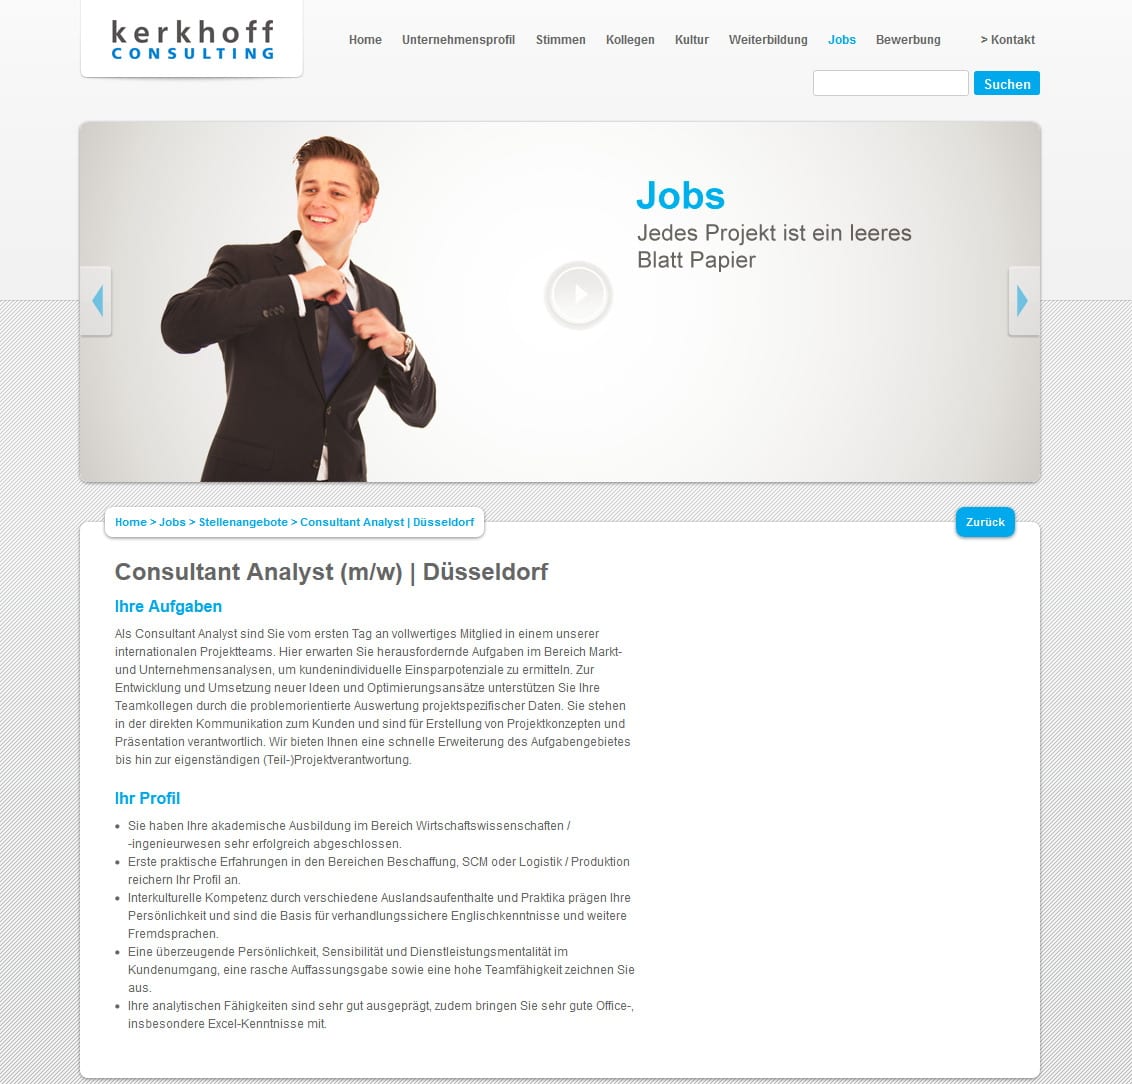 Jobs bei Kerkhoff Consulting - eine Bewerbung unmittelbar aus dem Stellenangebot ist nicht möglich